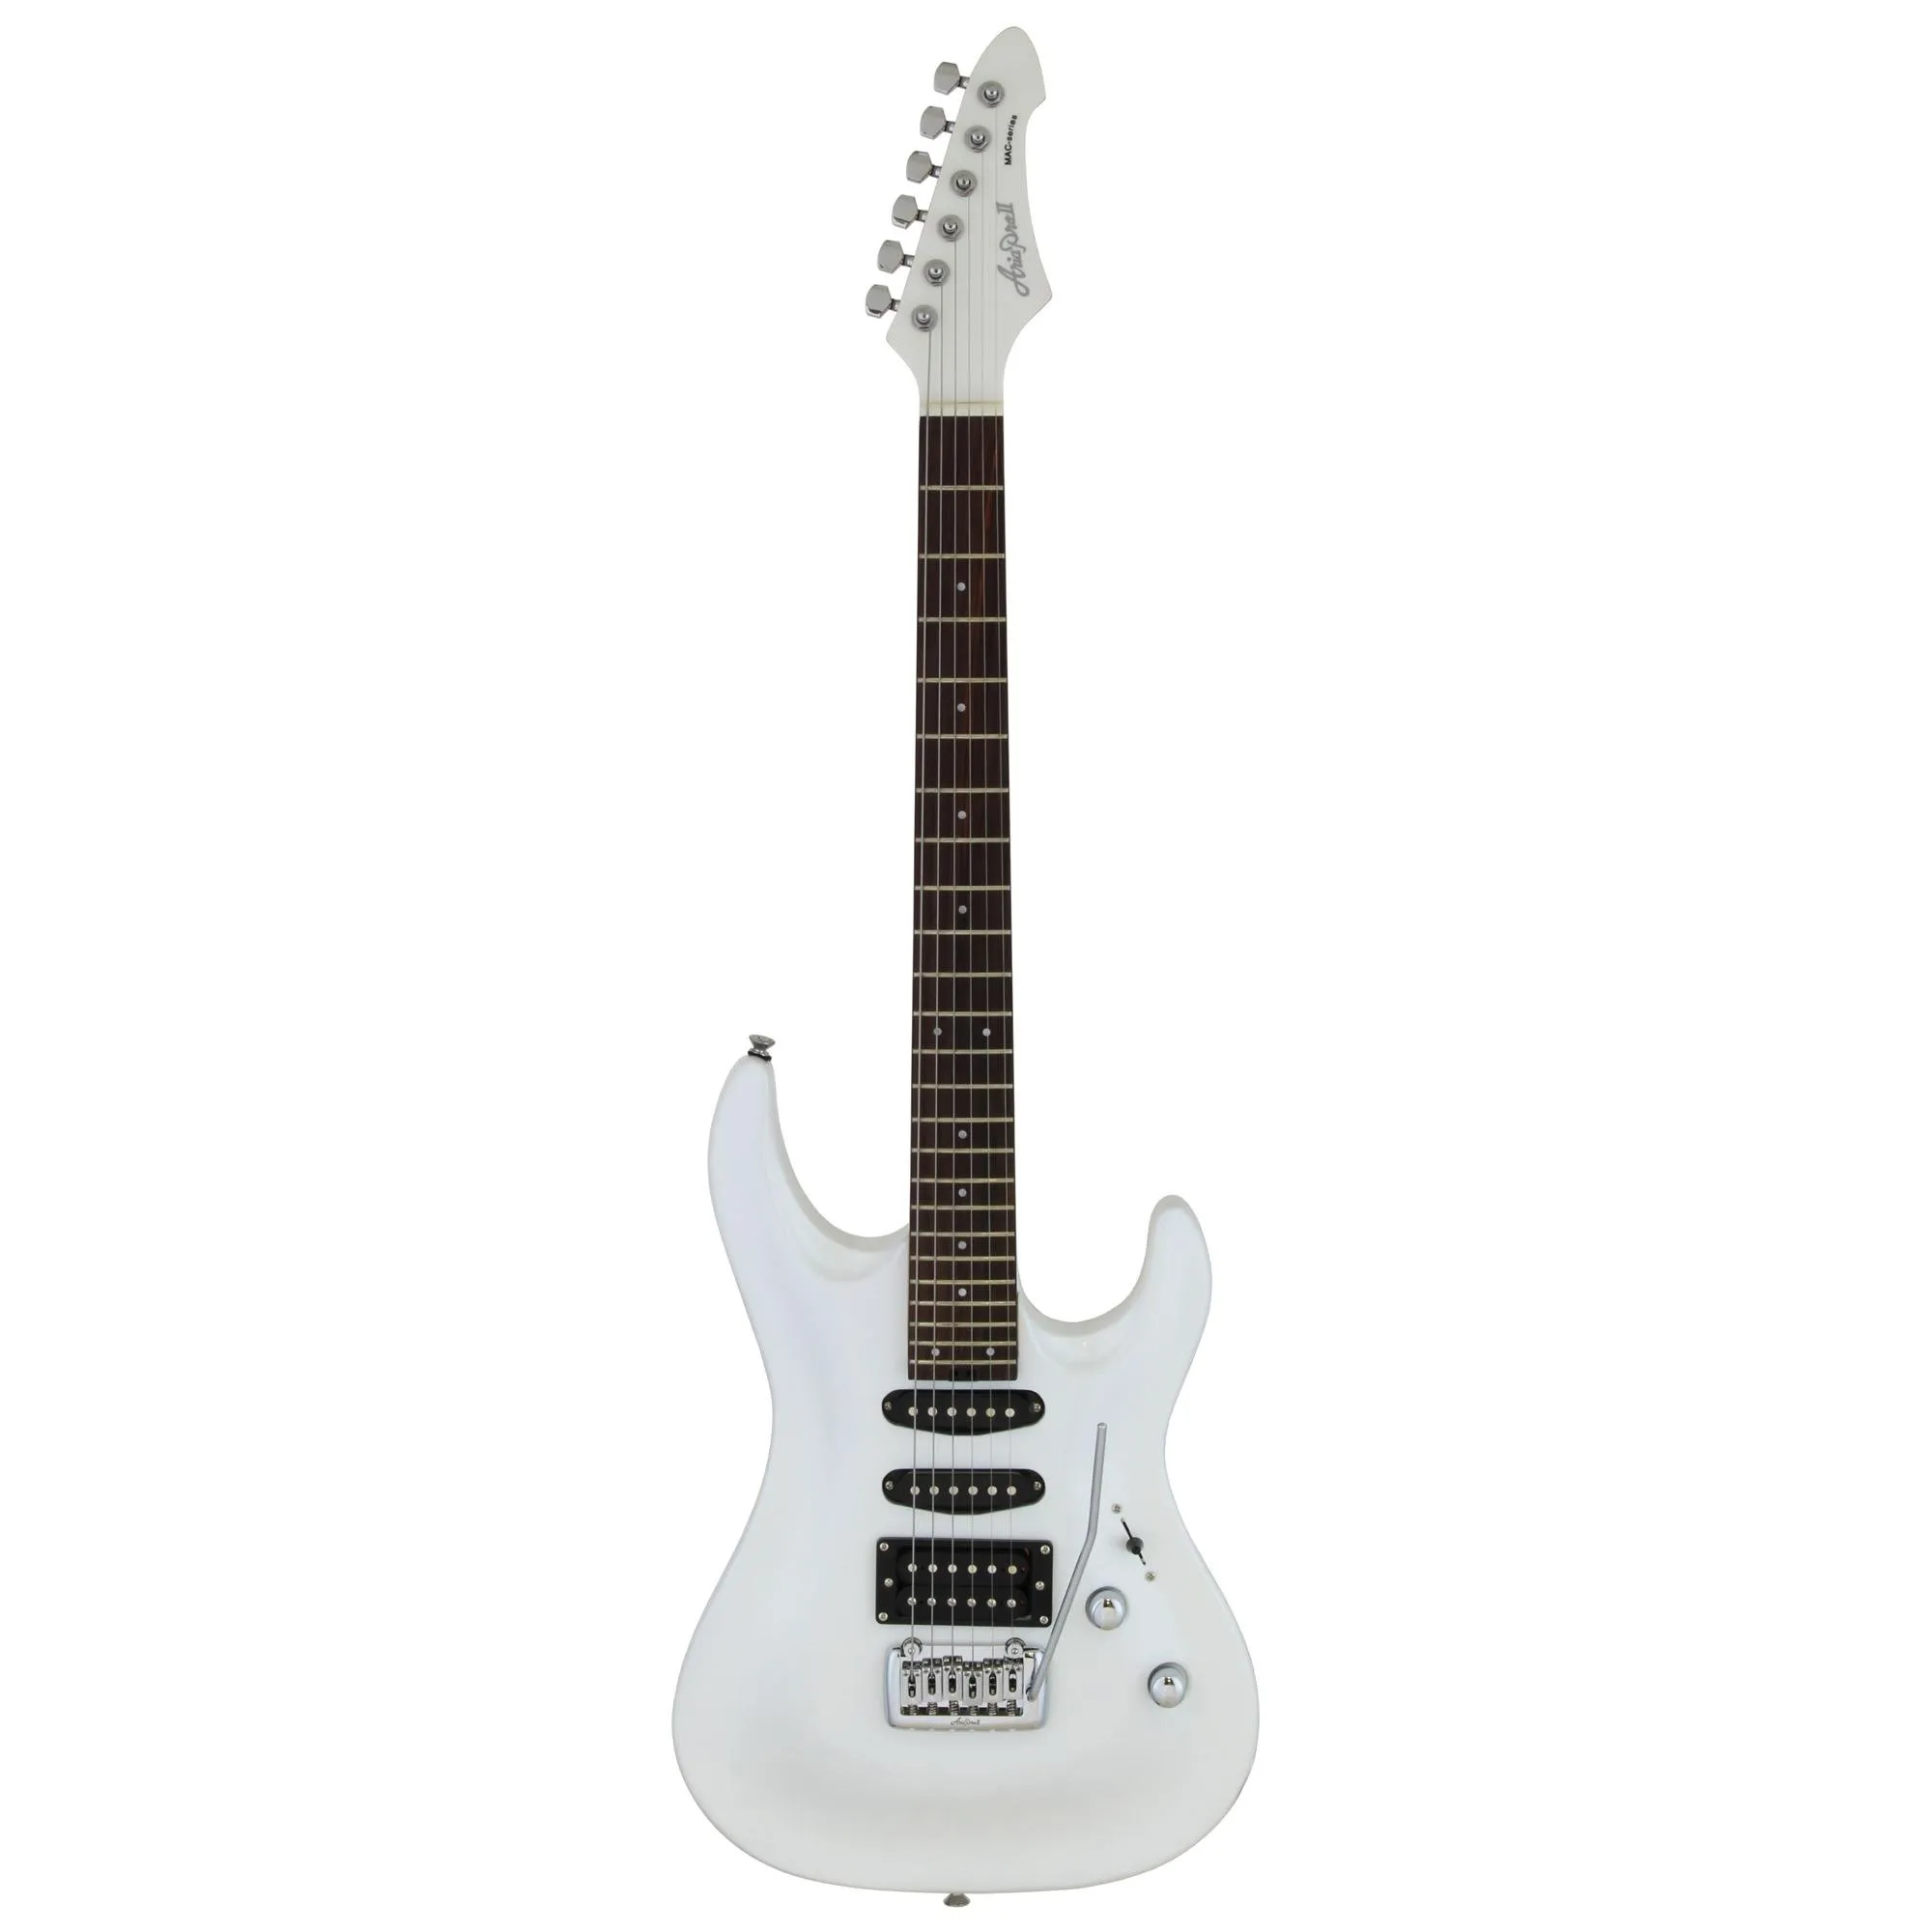 Guitarra Aria Pro II MAC-STD Pearl White por 2.581,00 à vista no boleto/pix ou parcele em até 12x sem juros. Compre na loja Mundomax!